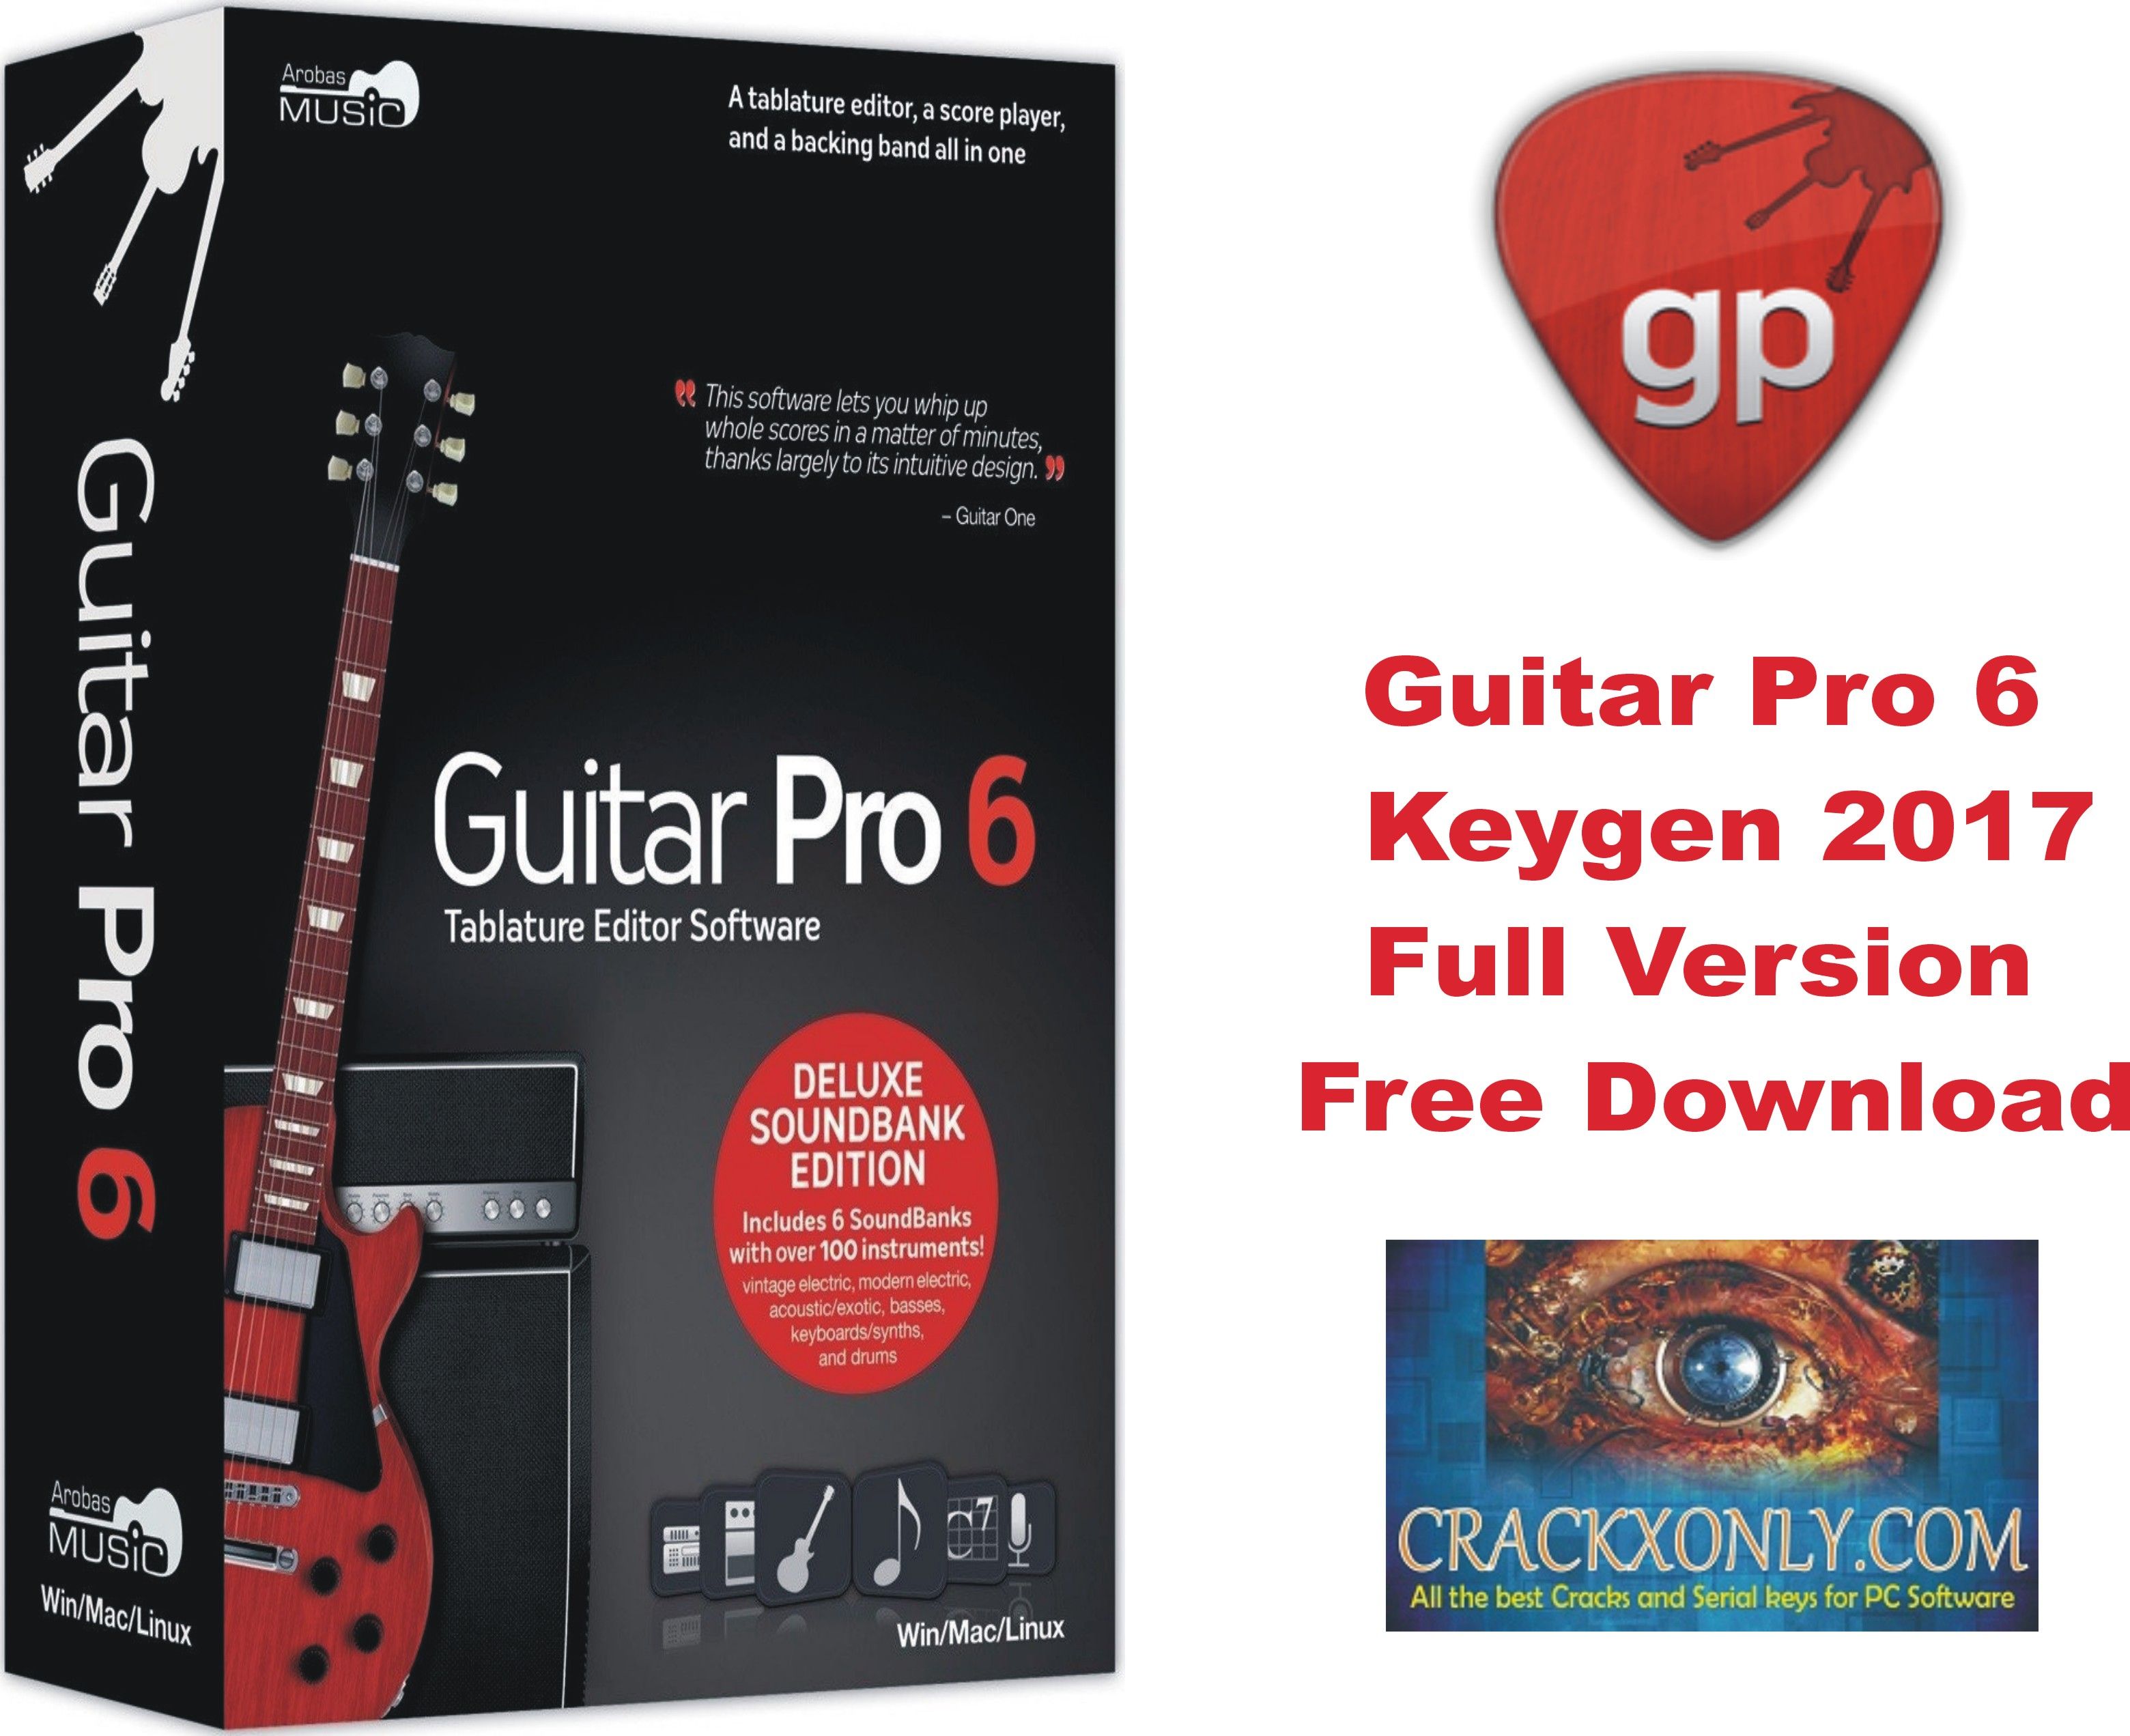 guitar pro 6 keygen activation request code